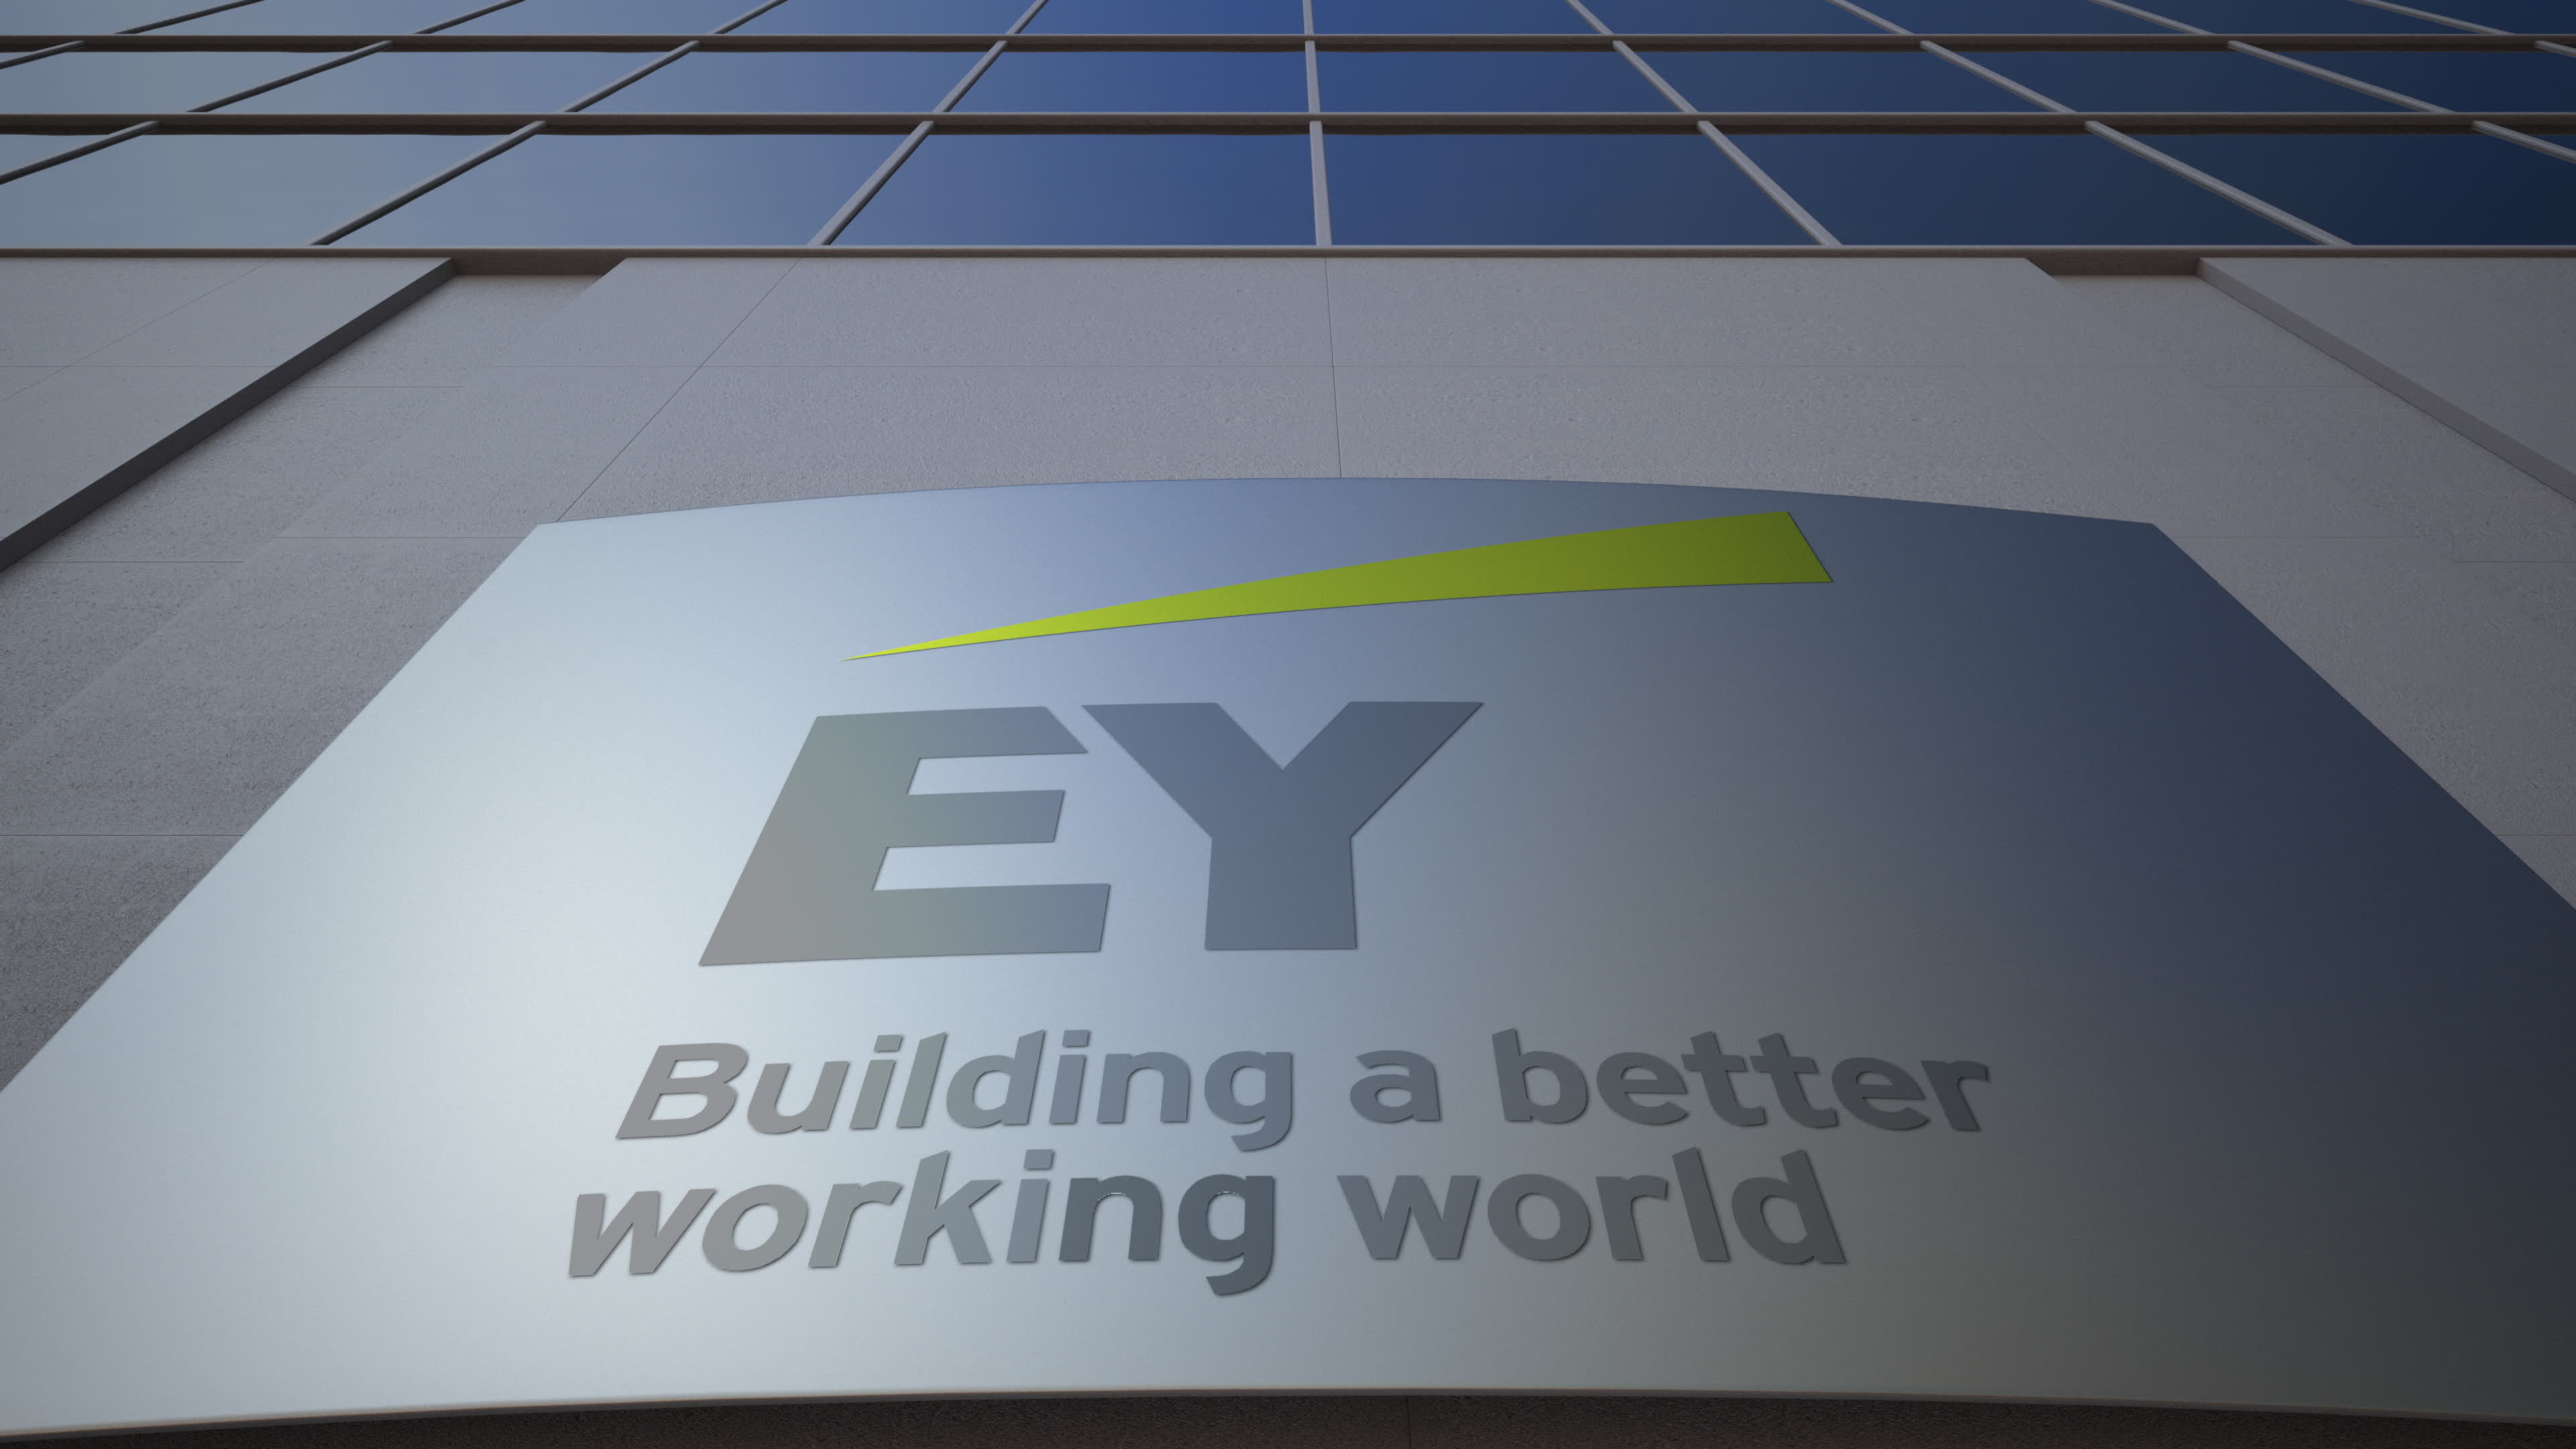 Compania de audit şi consultanţă EY a avut venituri de 36,4 miliarde dolari la nivel global în 2019